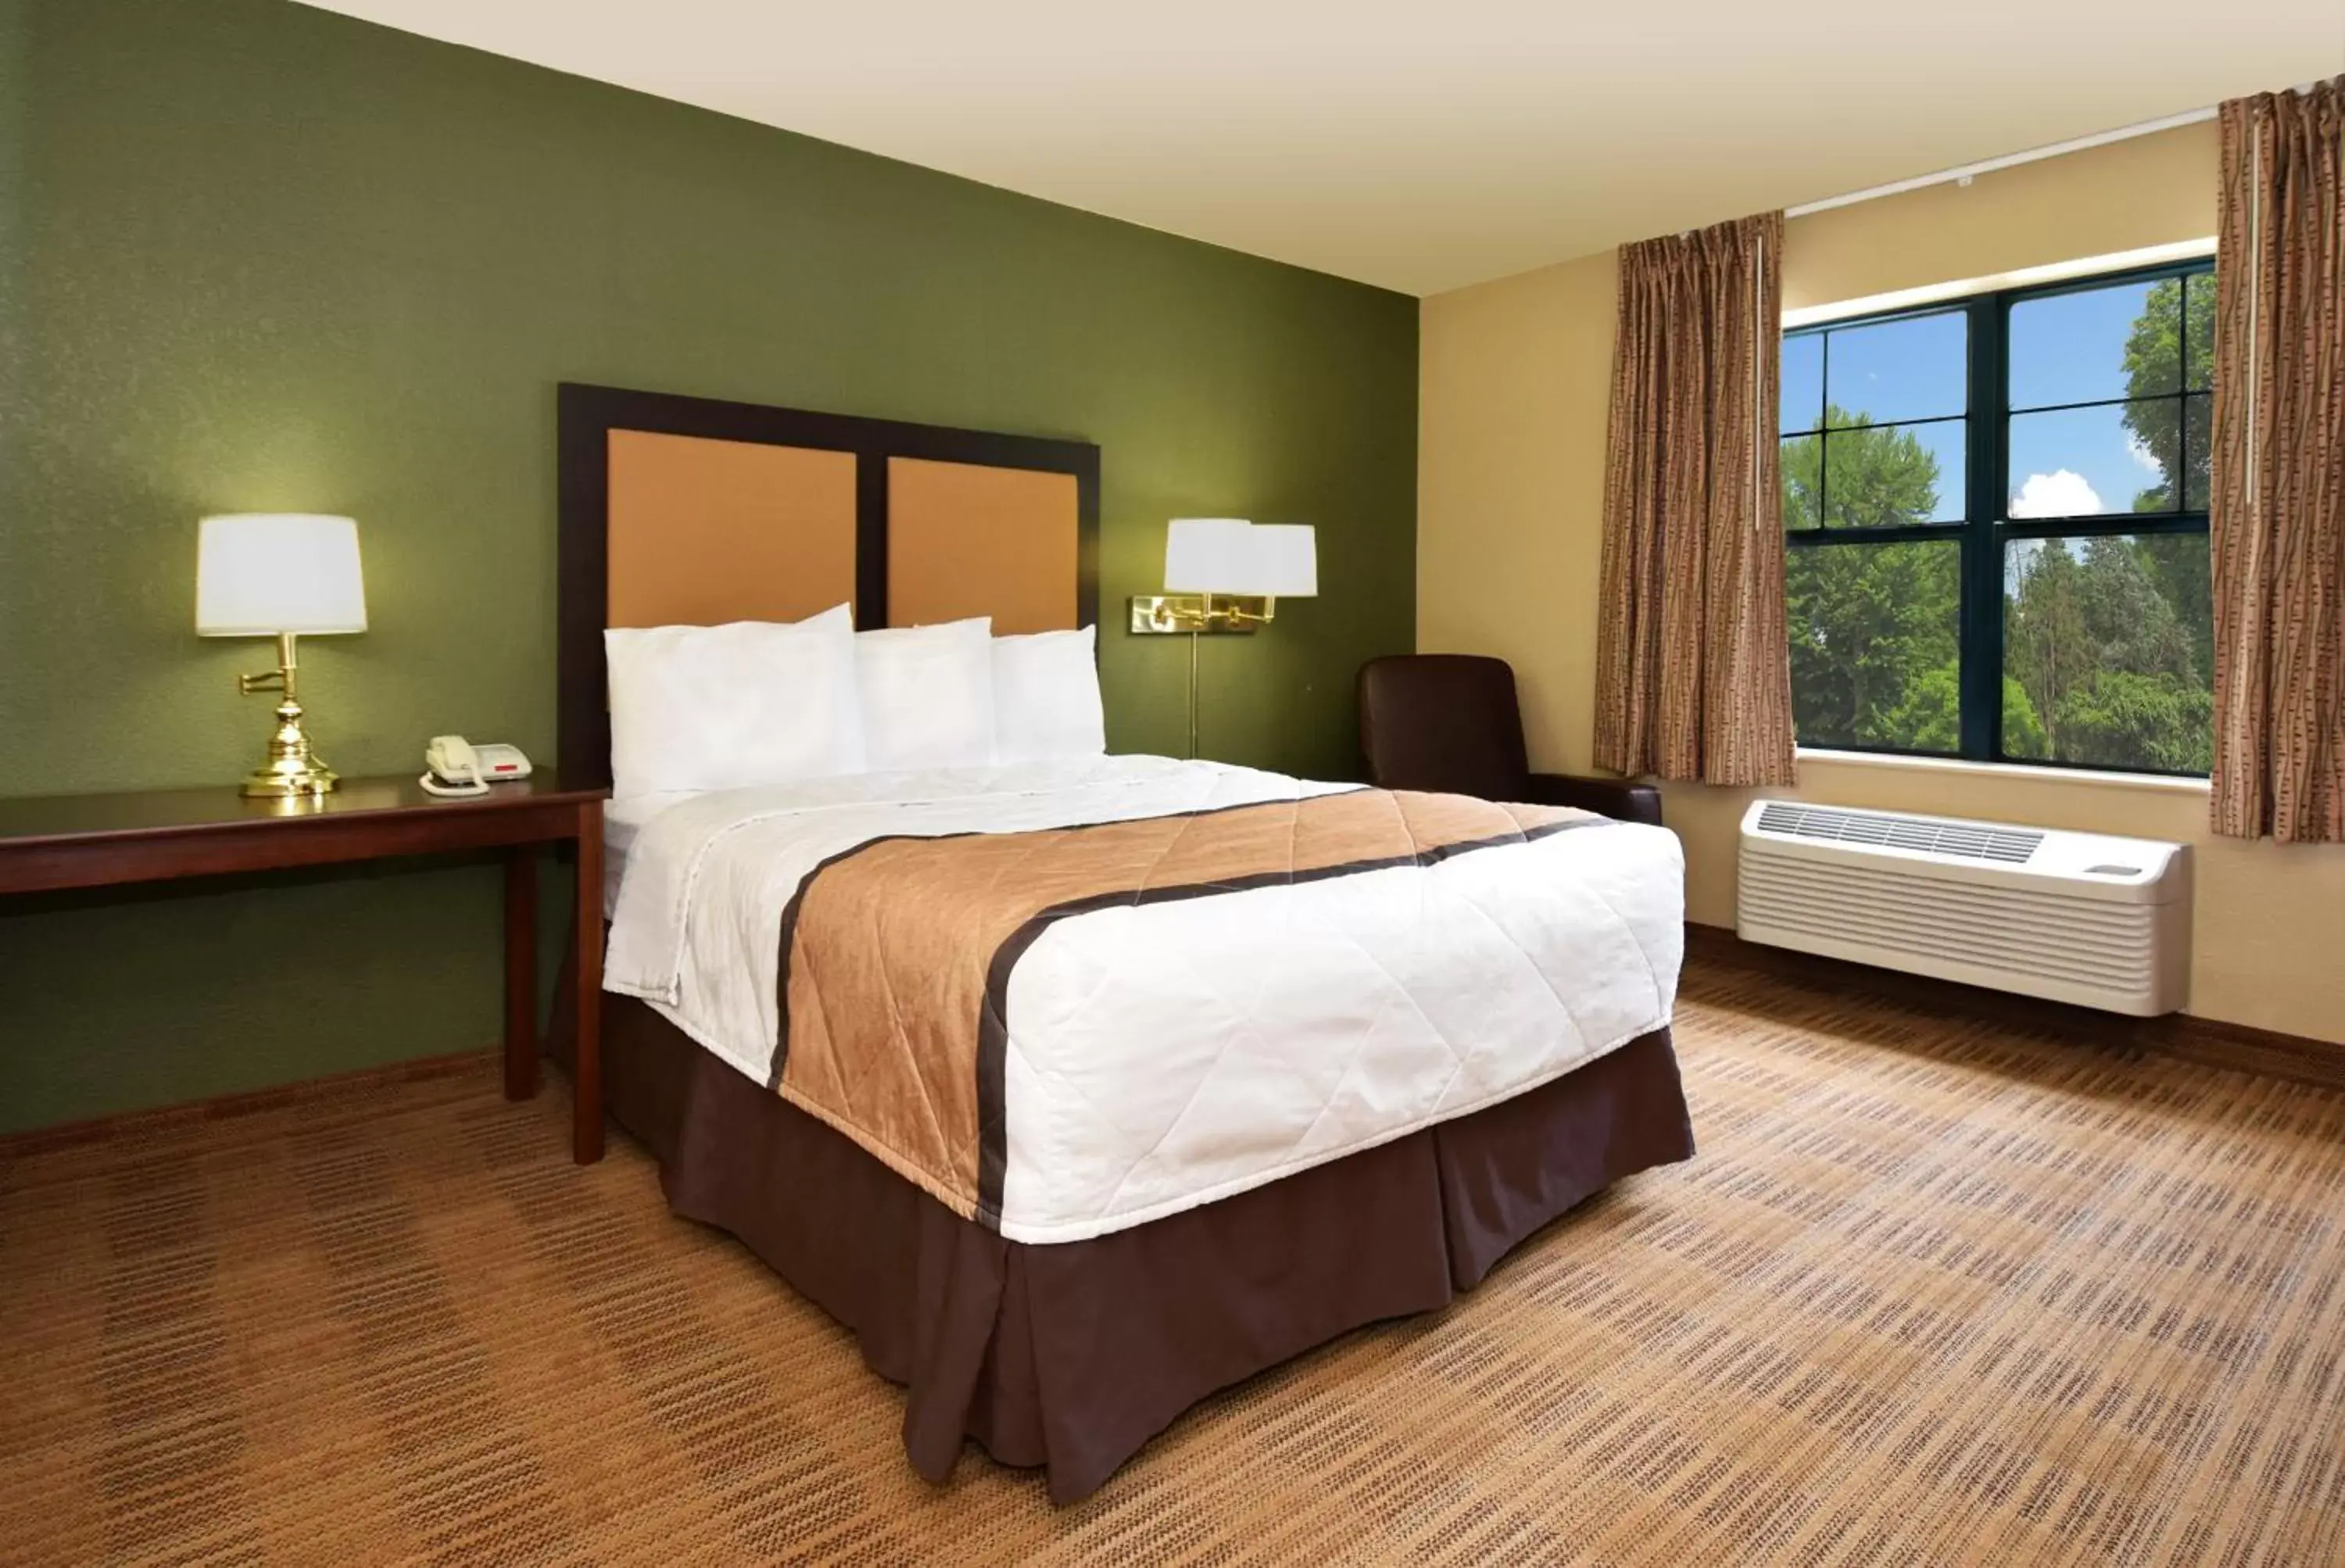 Bed in Extended Stay America Suites - Cincinnati - Florence - Turfway Rd